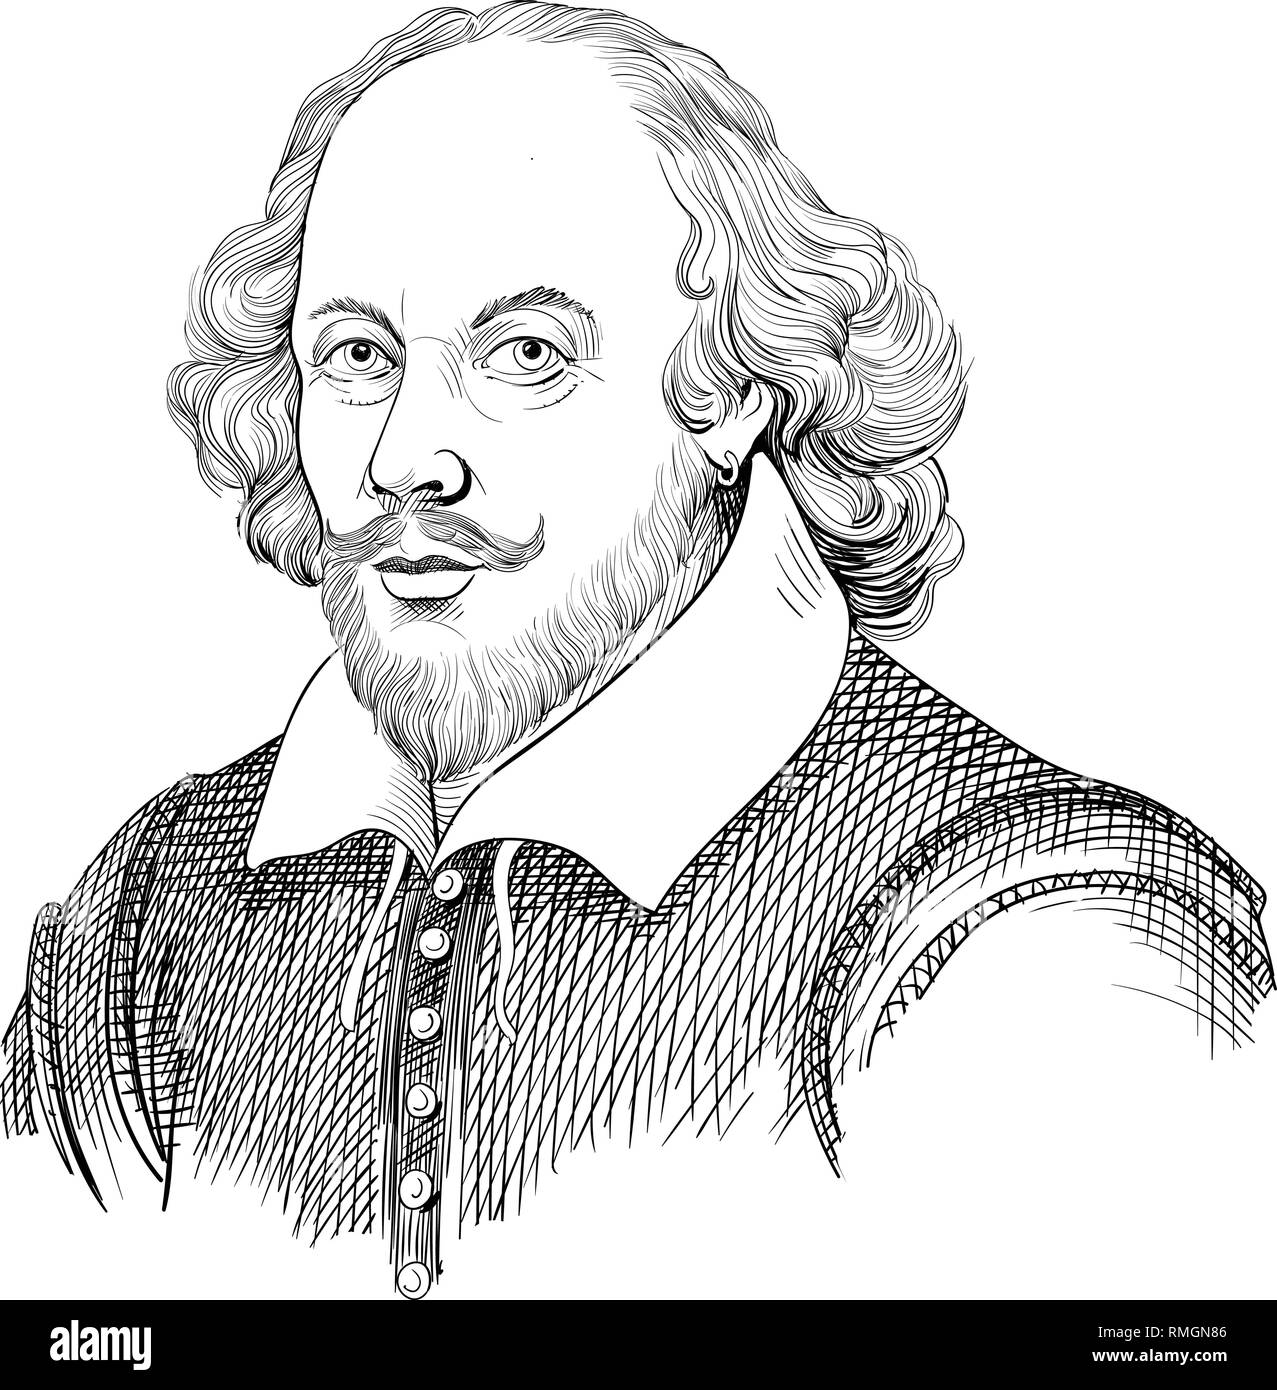 William Shakespeare portrait dans l'art de l'illustration. Il était l'anglais, poète, dramaturge, acteur, considéré comme le plus grand auteur de la littérature anglaise. Illustration de Vecteur